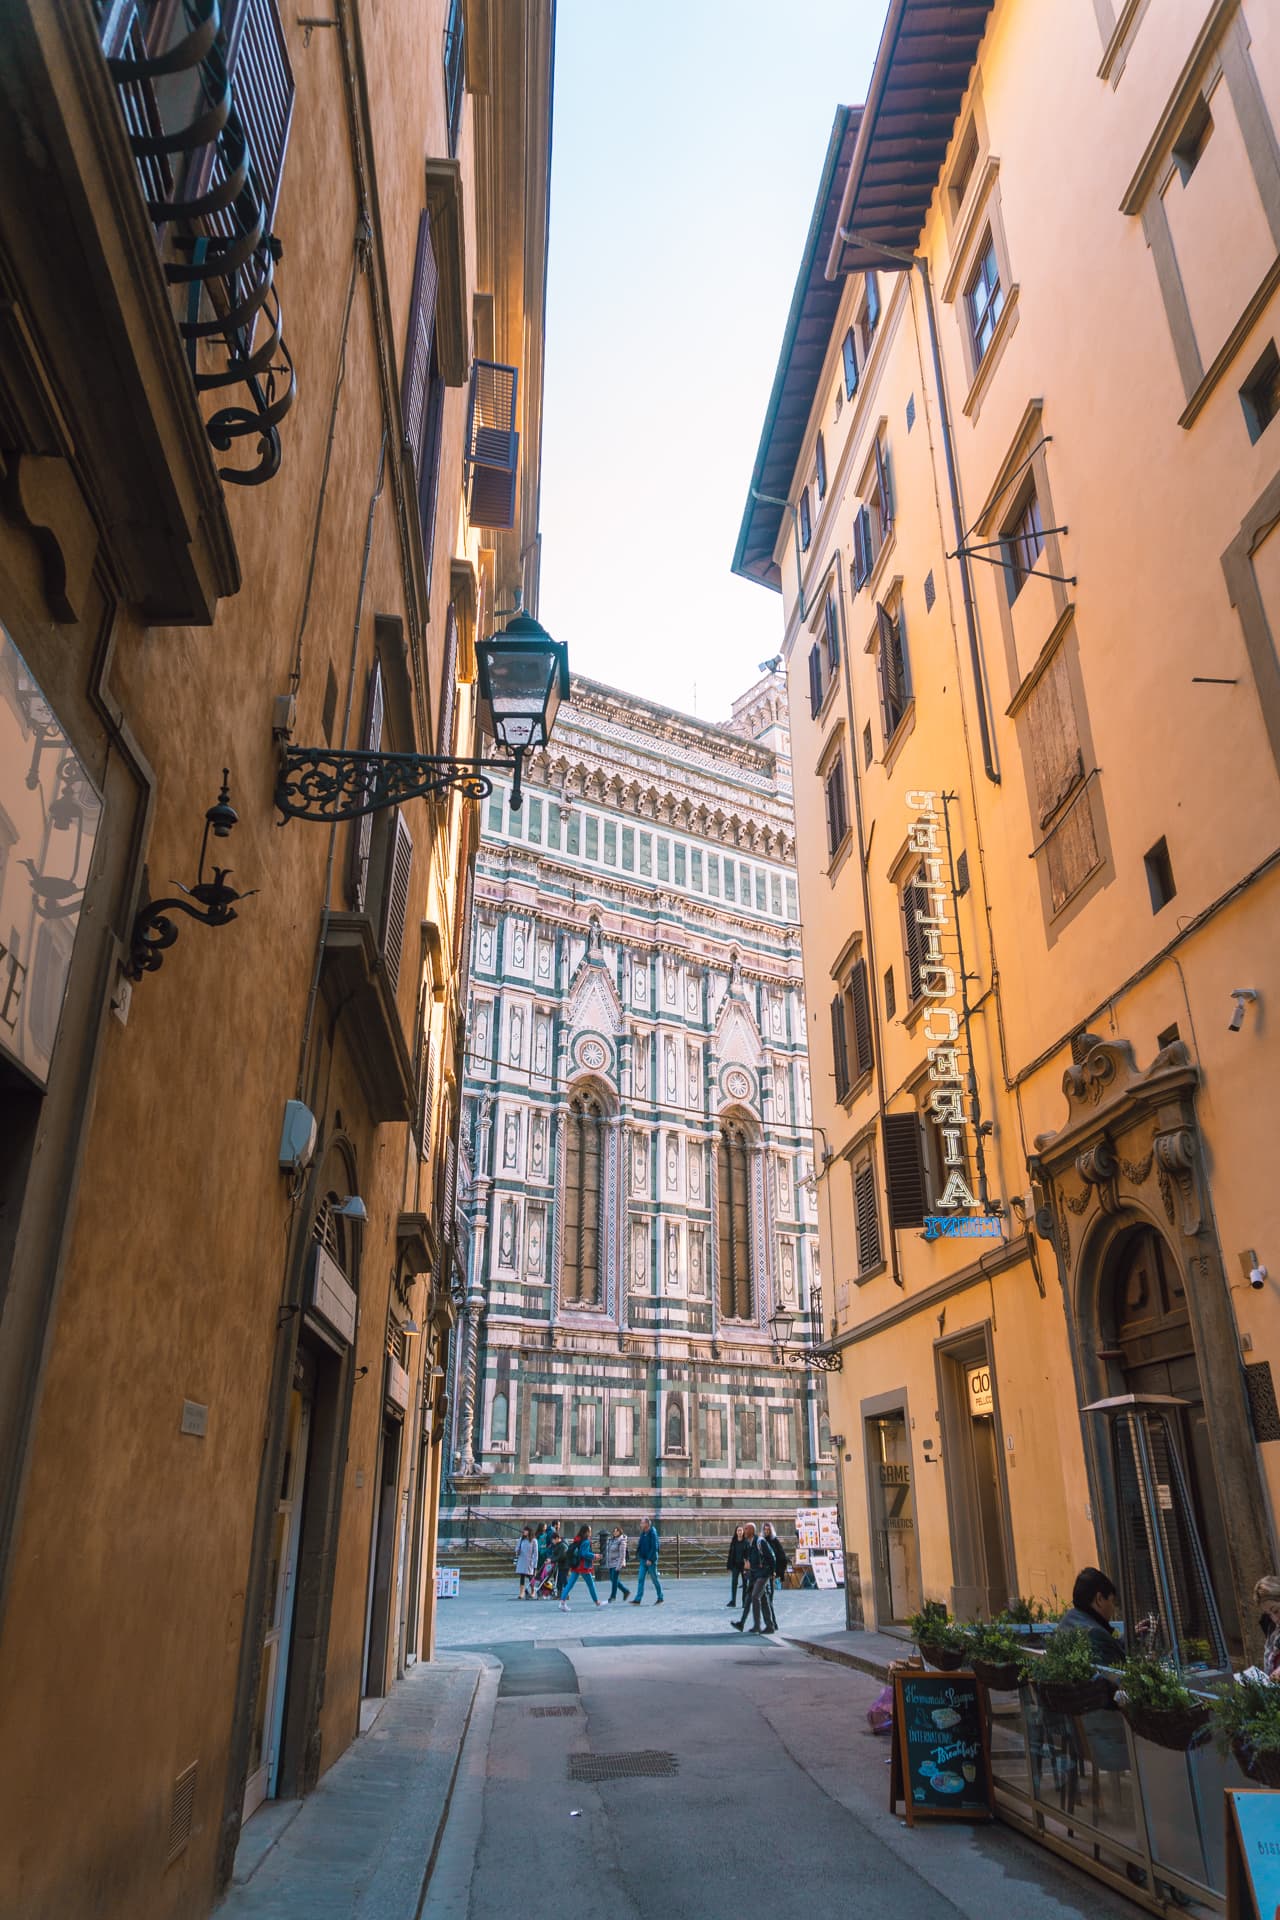 Uliczki we Florencji | Zwiedzanie Florencji. Informacje praktyczne